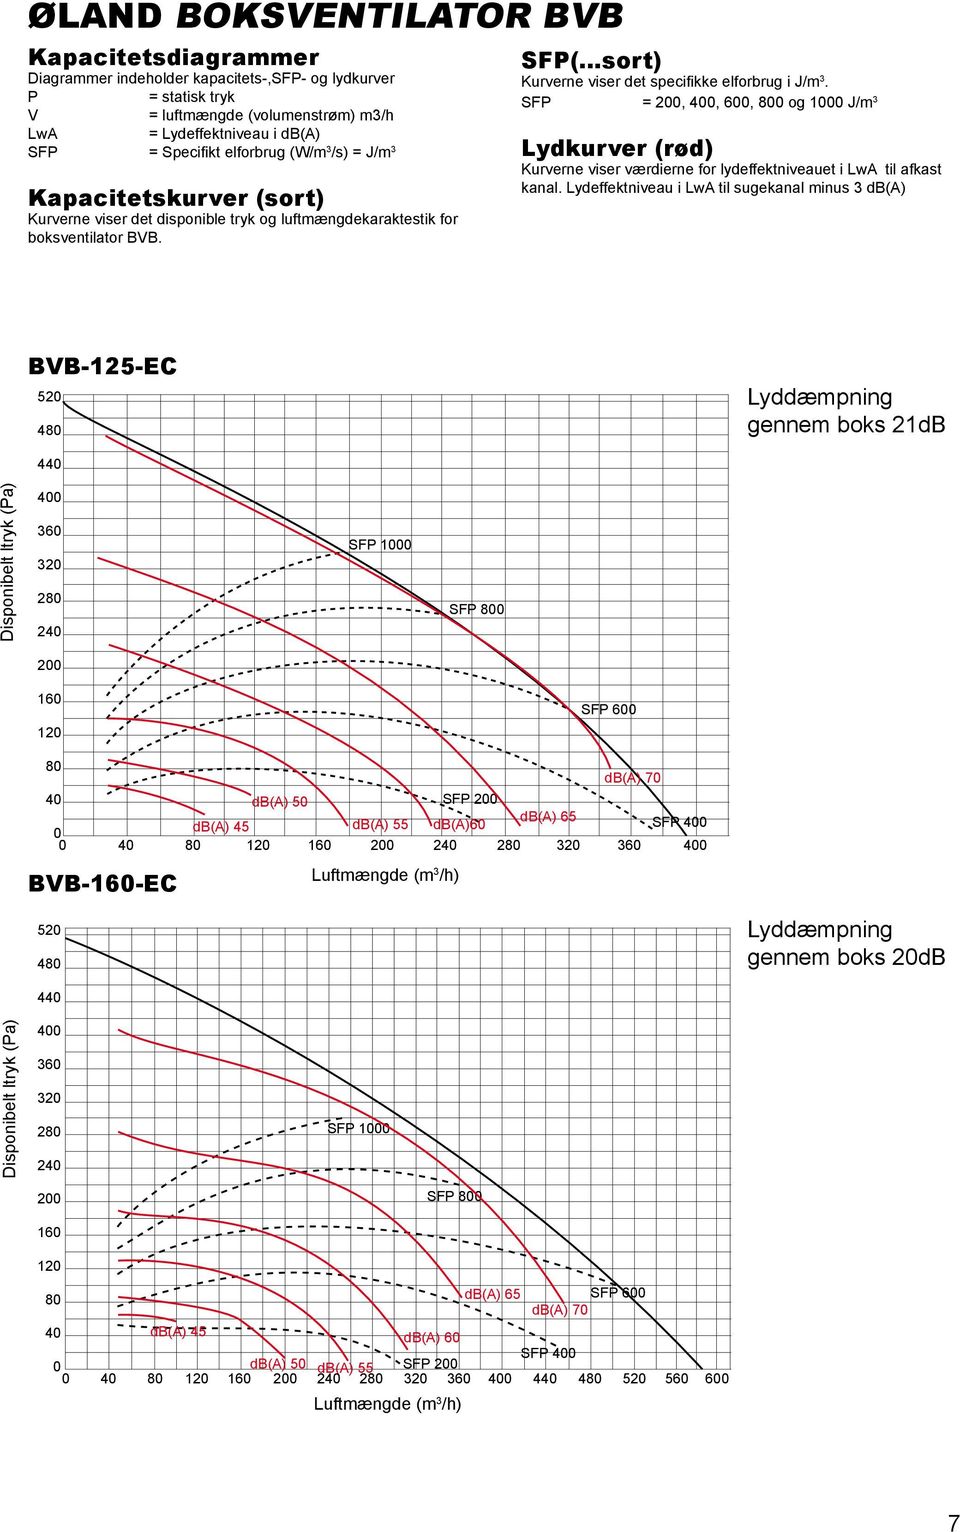 SFP =,, 6, 8 og 1 J/m 3 Lydkurver (rød) Kurverne viser værdierne for lydeffektniveauet i LwA til afkast kanal.